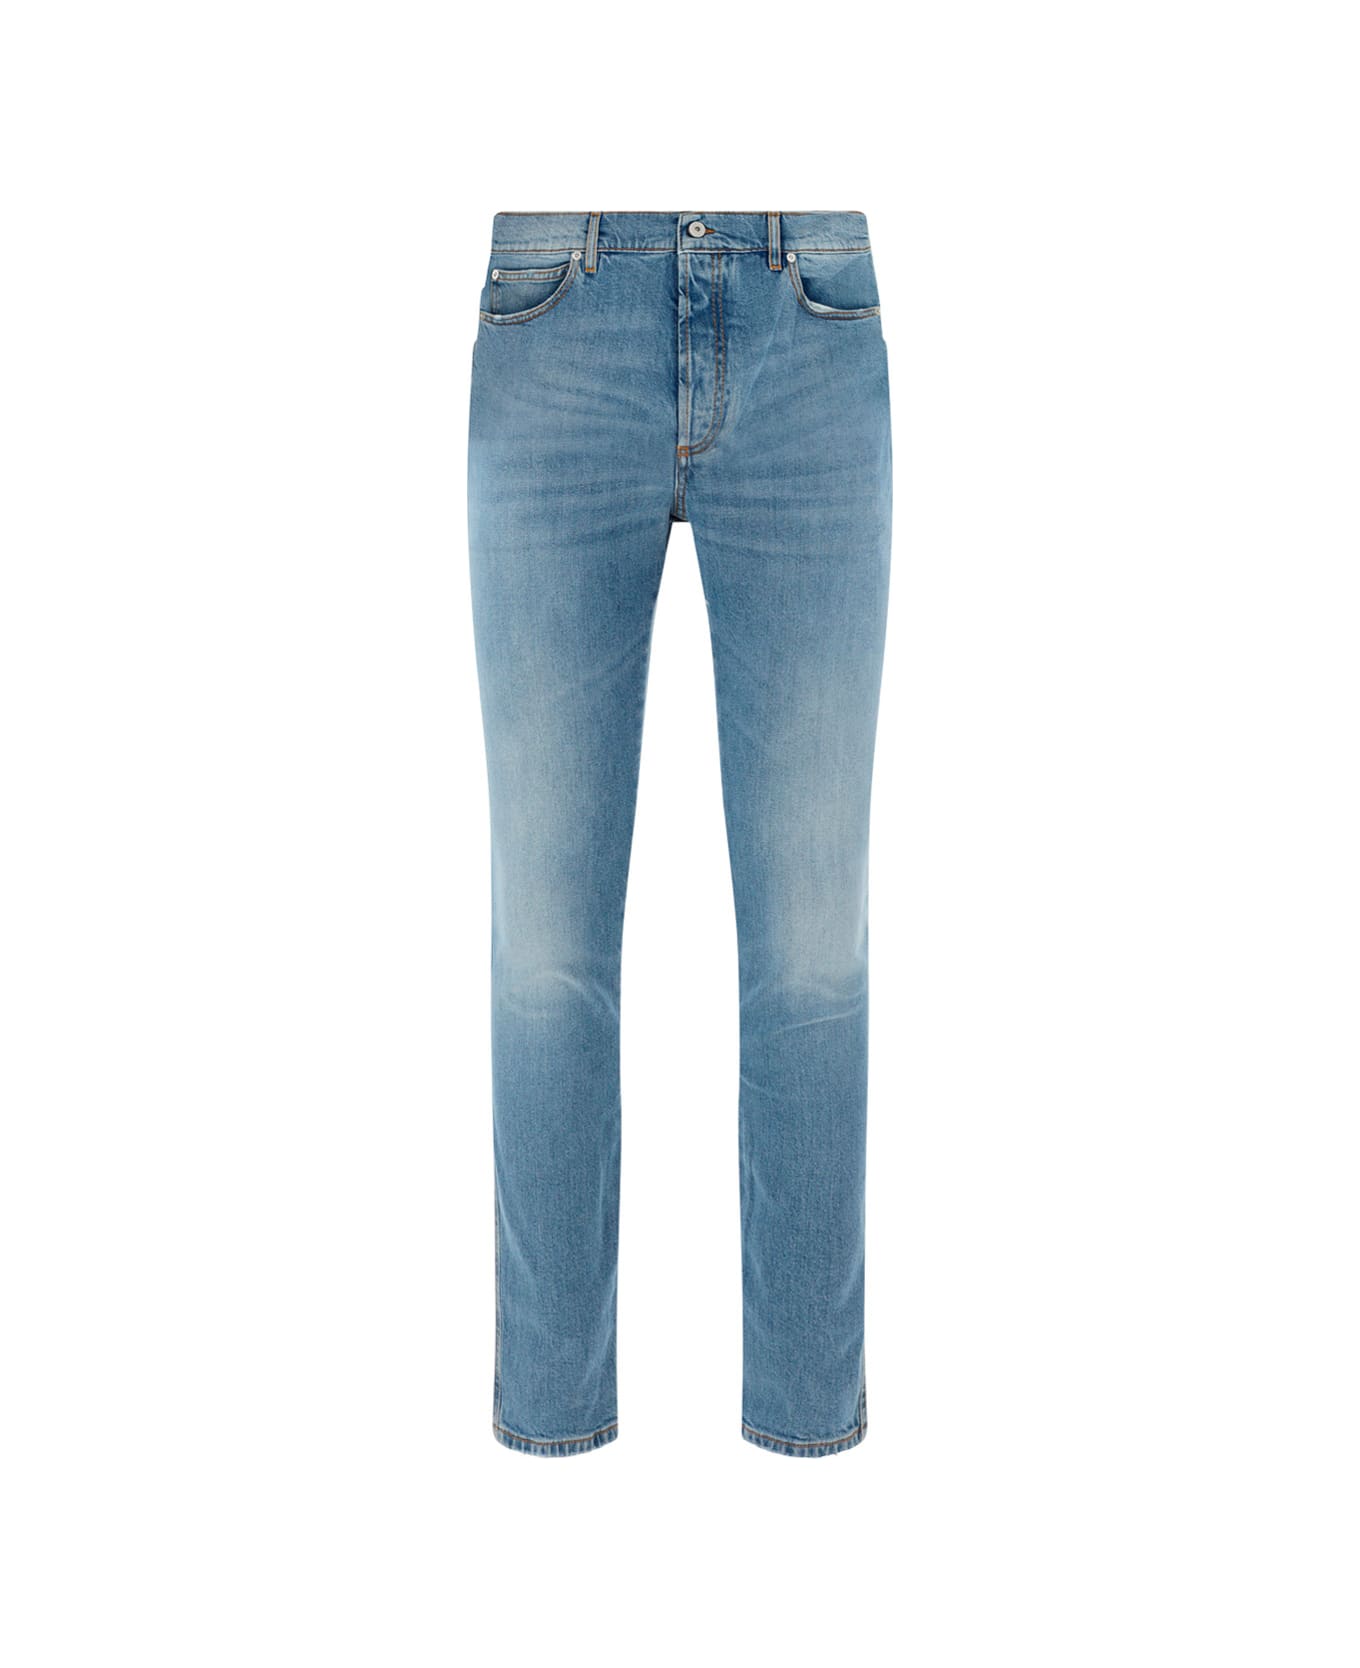 Balmain Slim Fit Jeans - Ff Bleu Jean